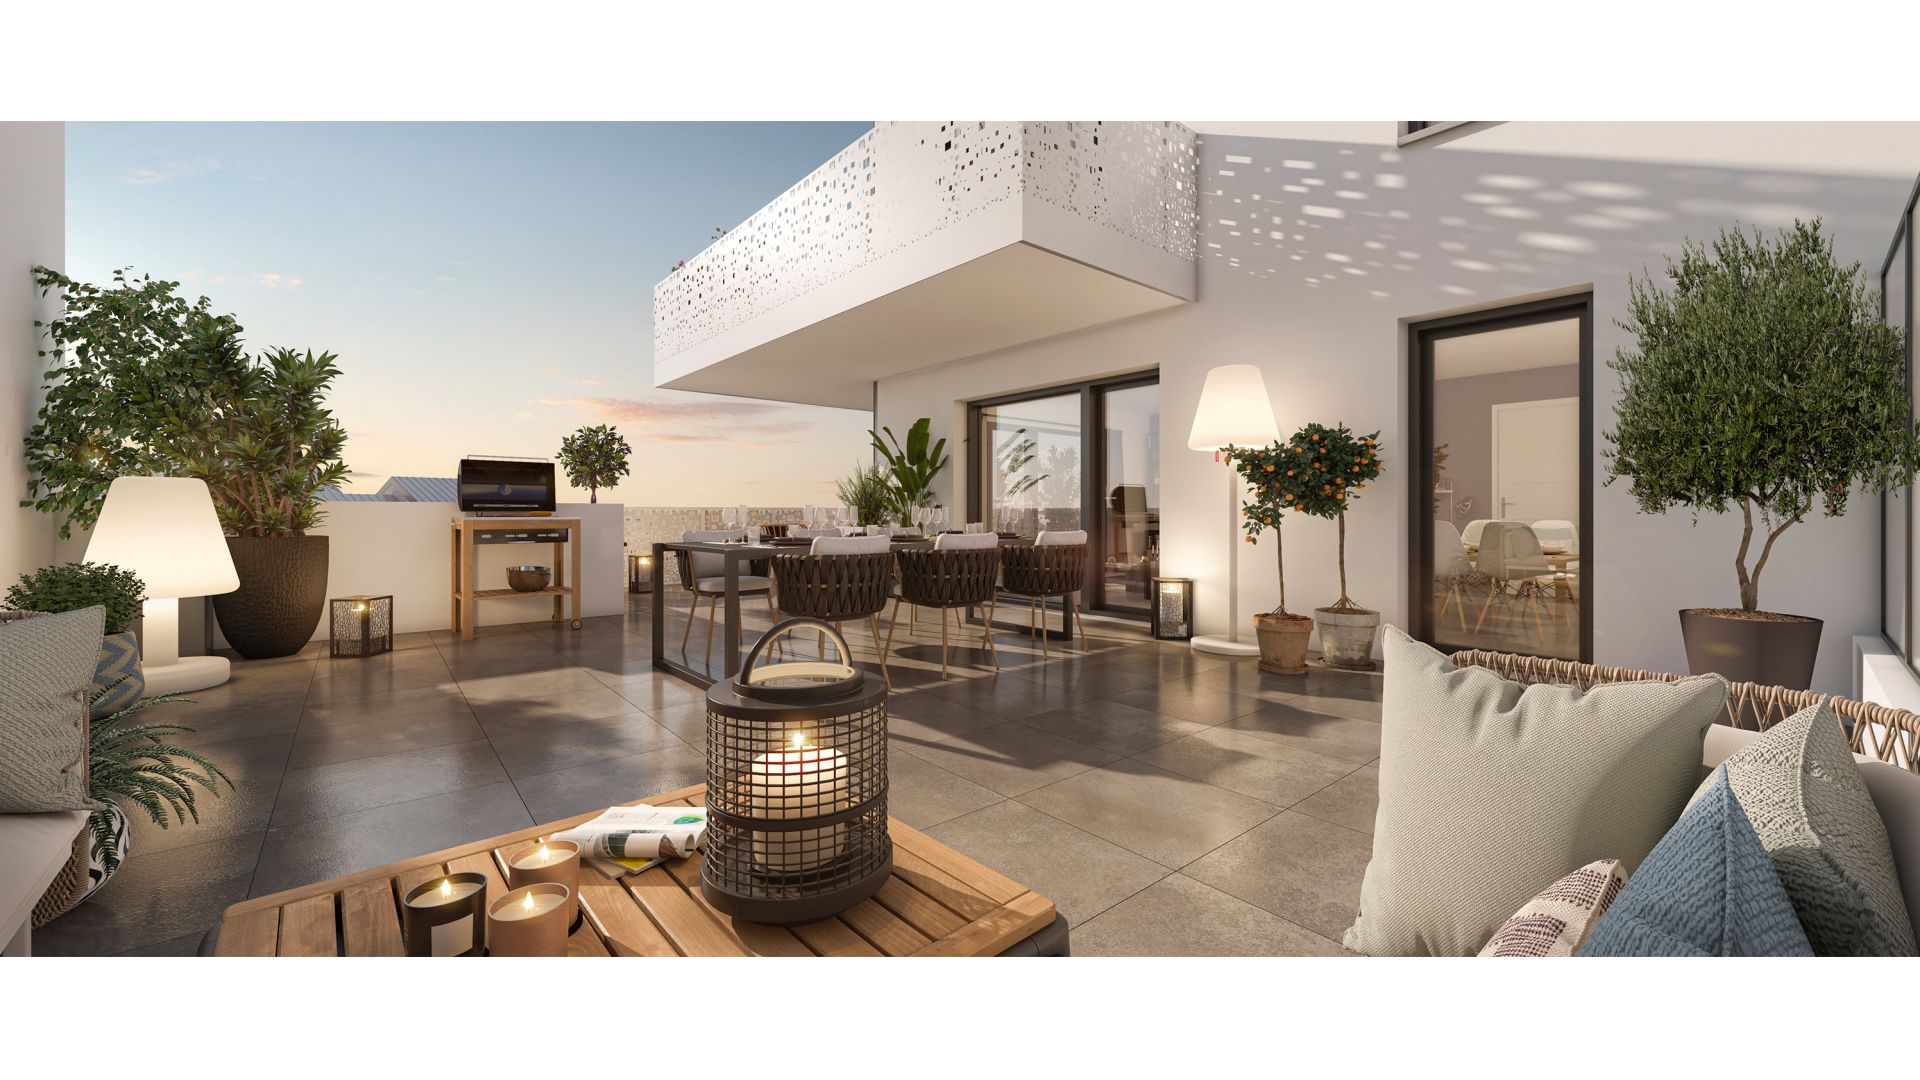 Greencity immobilier - achat appartements neufs du T1 au T3 - Résidence co-living - Résidence Parc Perosa - 73000 Chambéry  